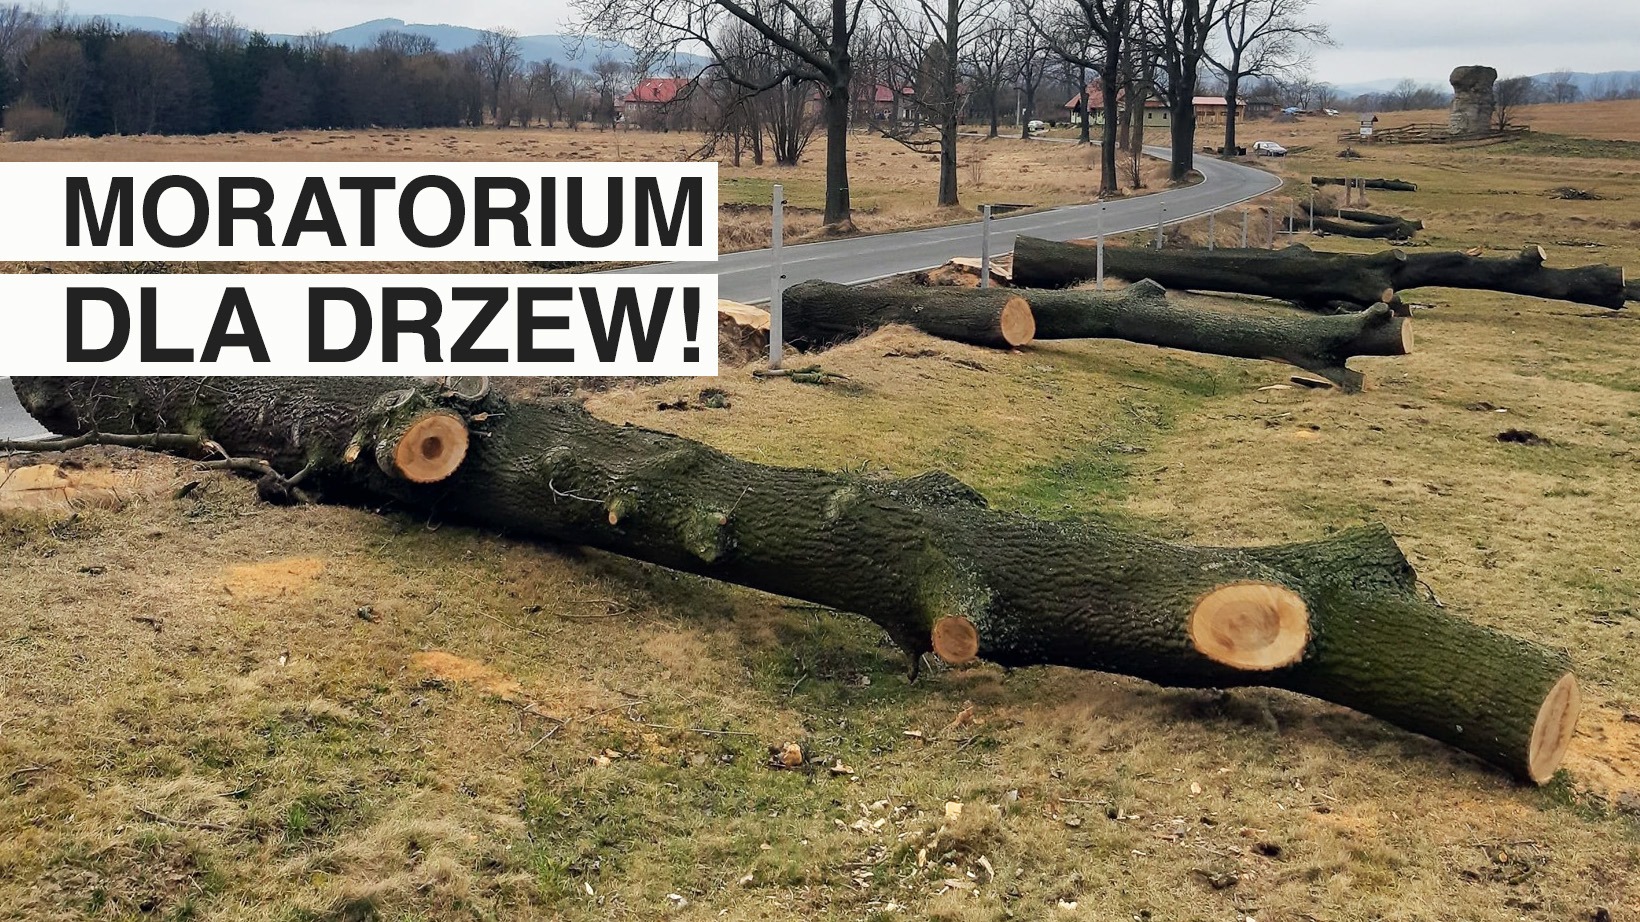 Moratorium dla drzew!